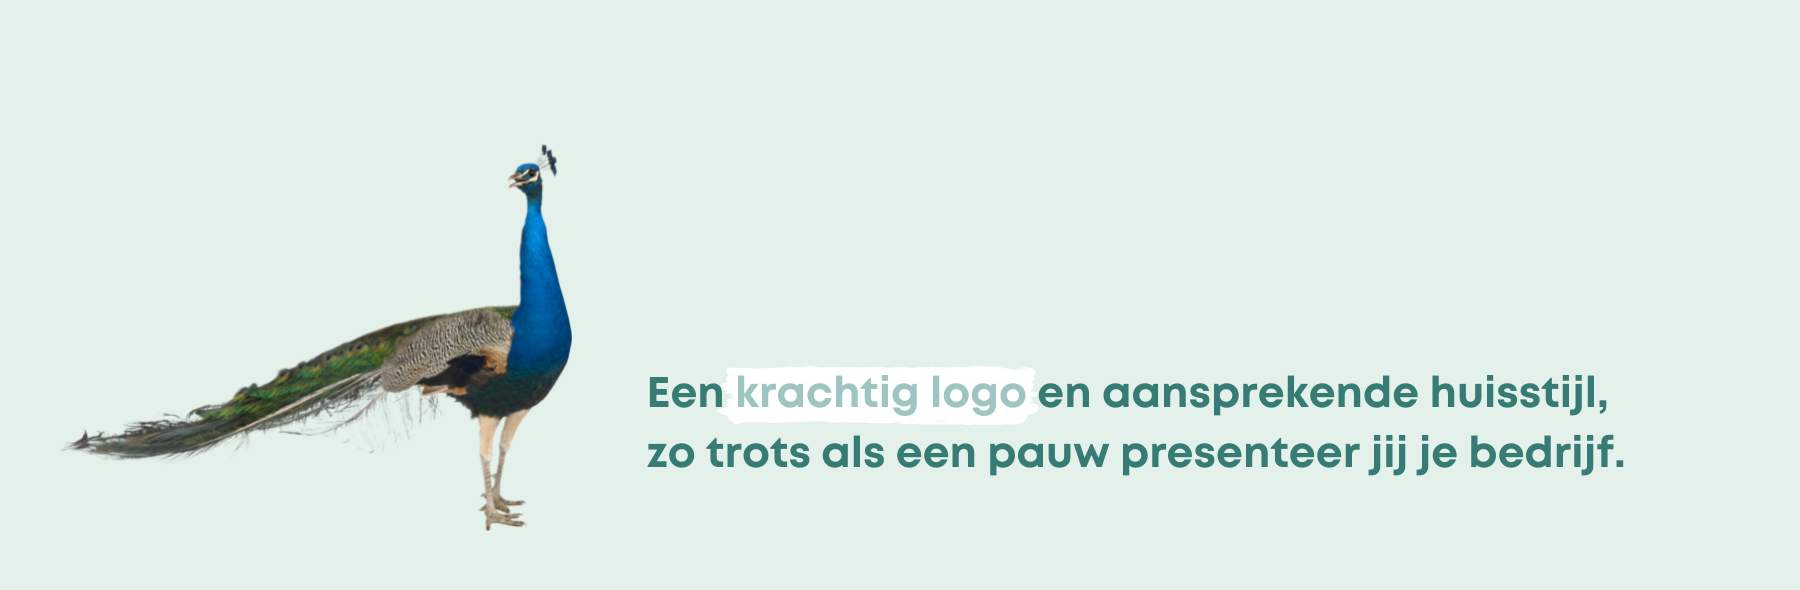 Online Marketing Bedrijf - Design Domein Reeuwijk